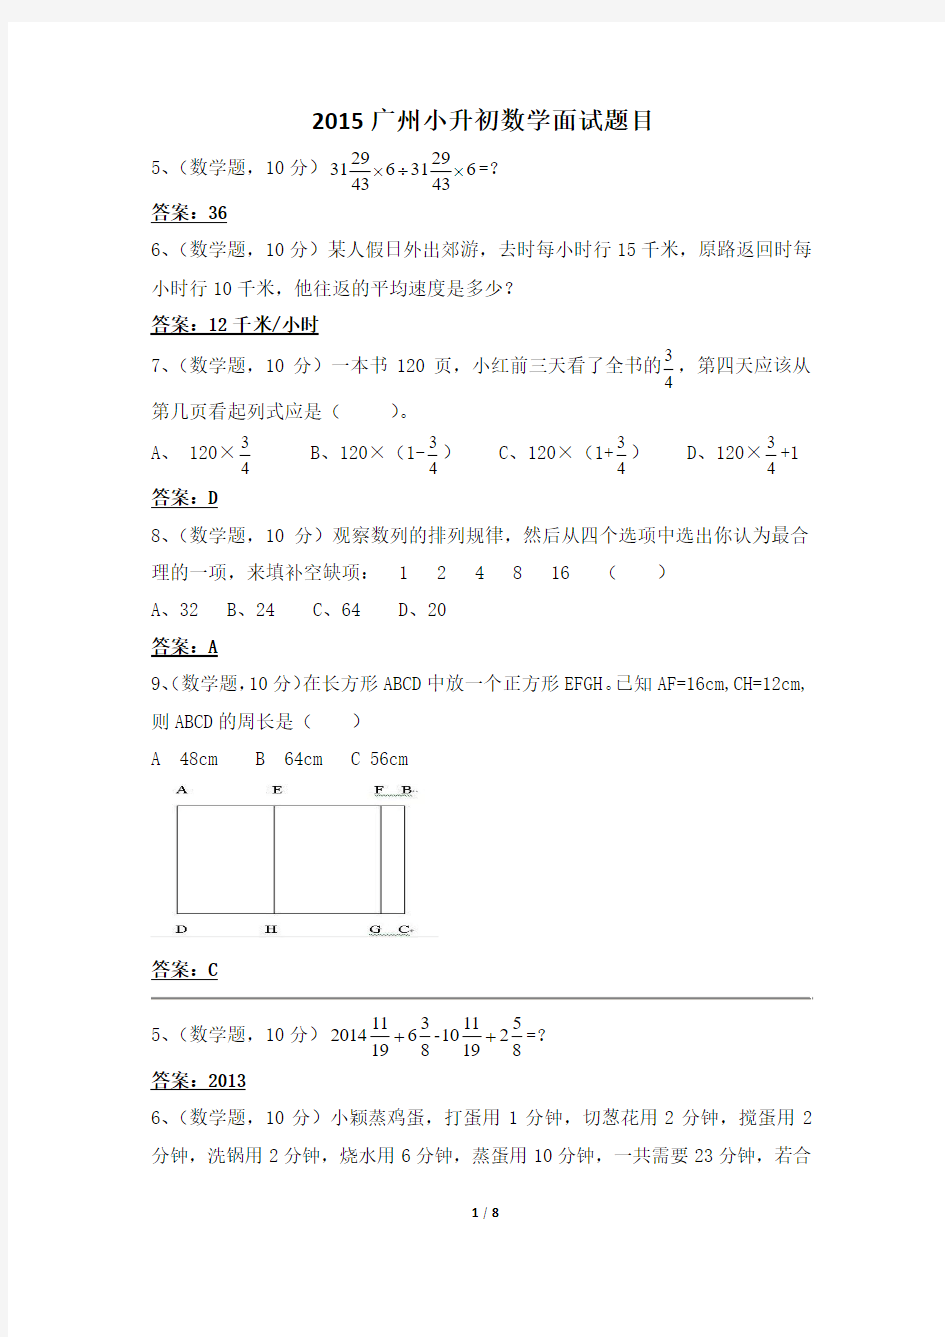 更多2015广州小升初数学面试题目